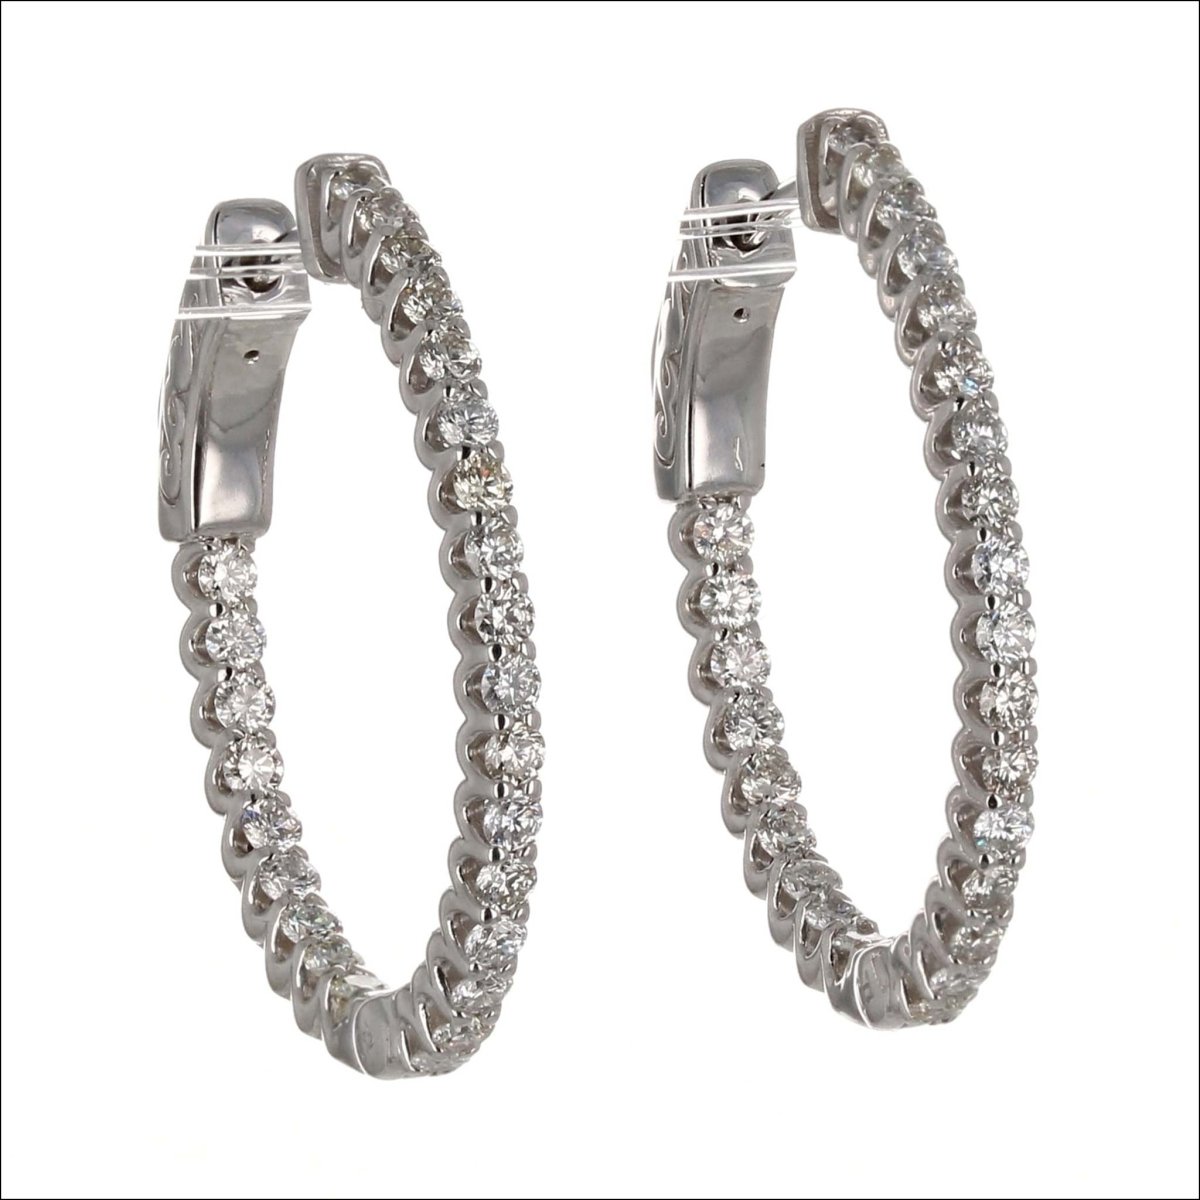 In/Out Oval Diamond Hoop Earrings 14KW 1.02cttw - JewelsmithEarrings